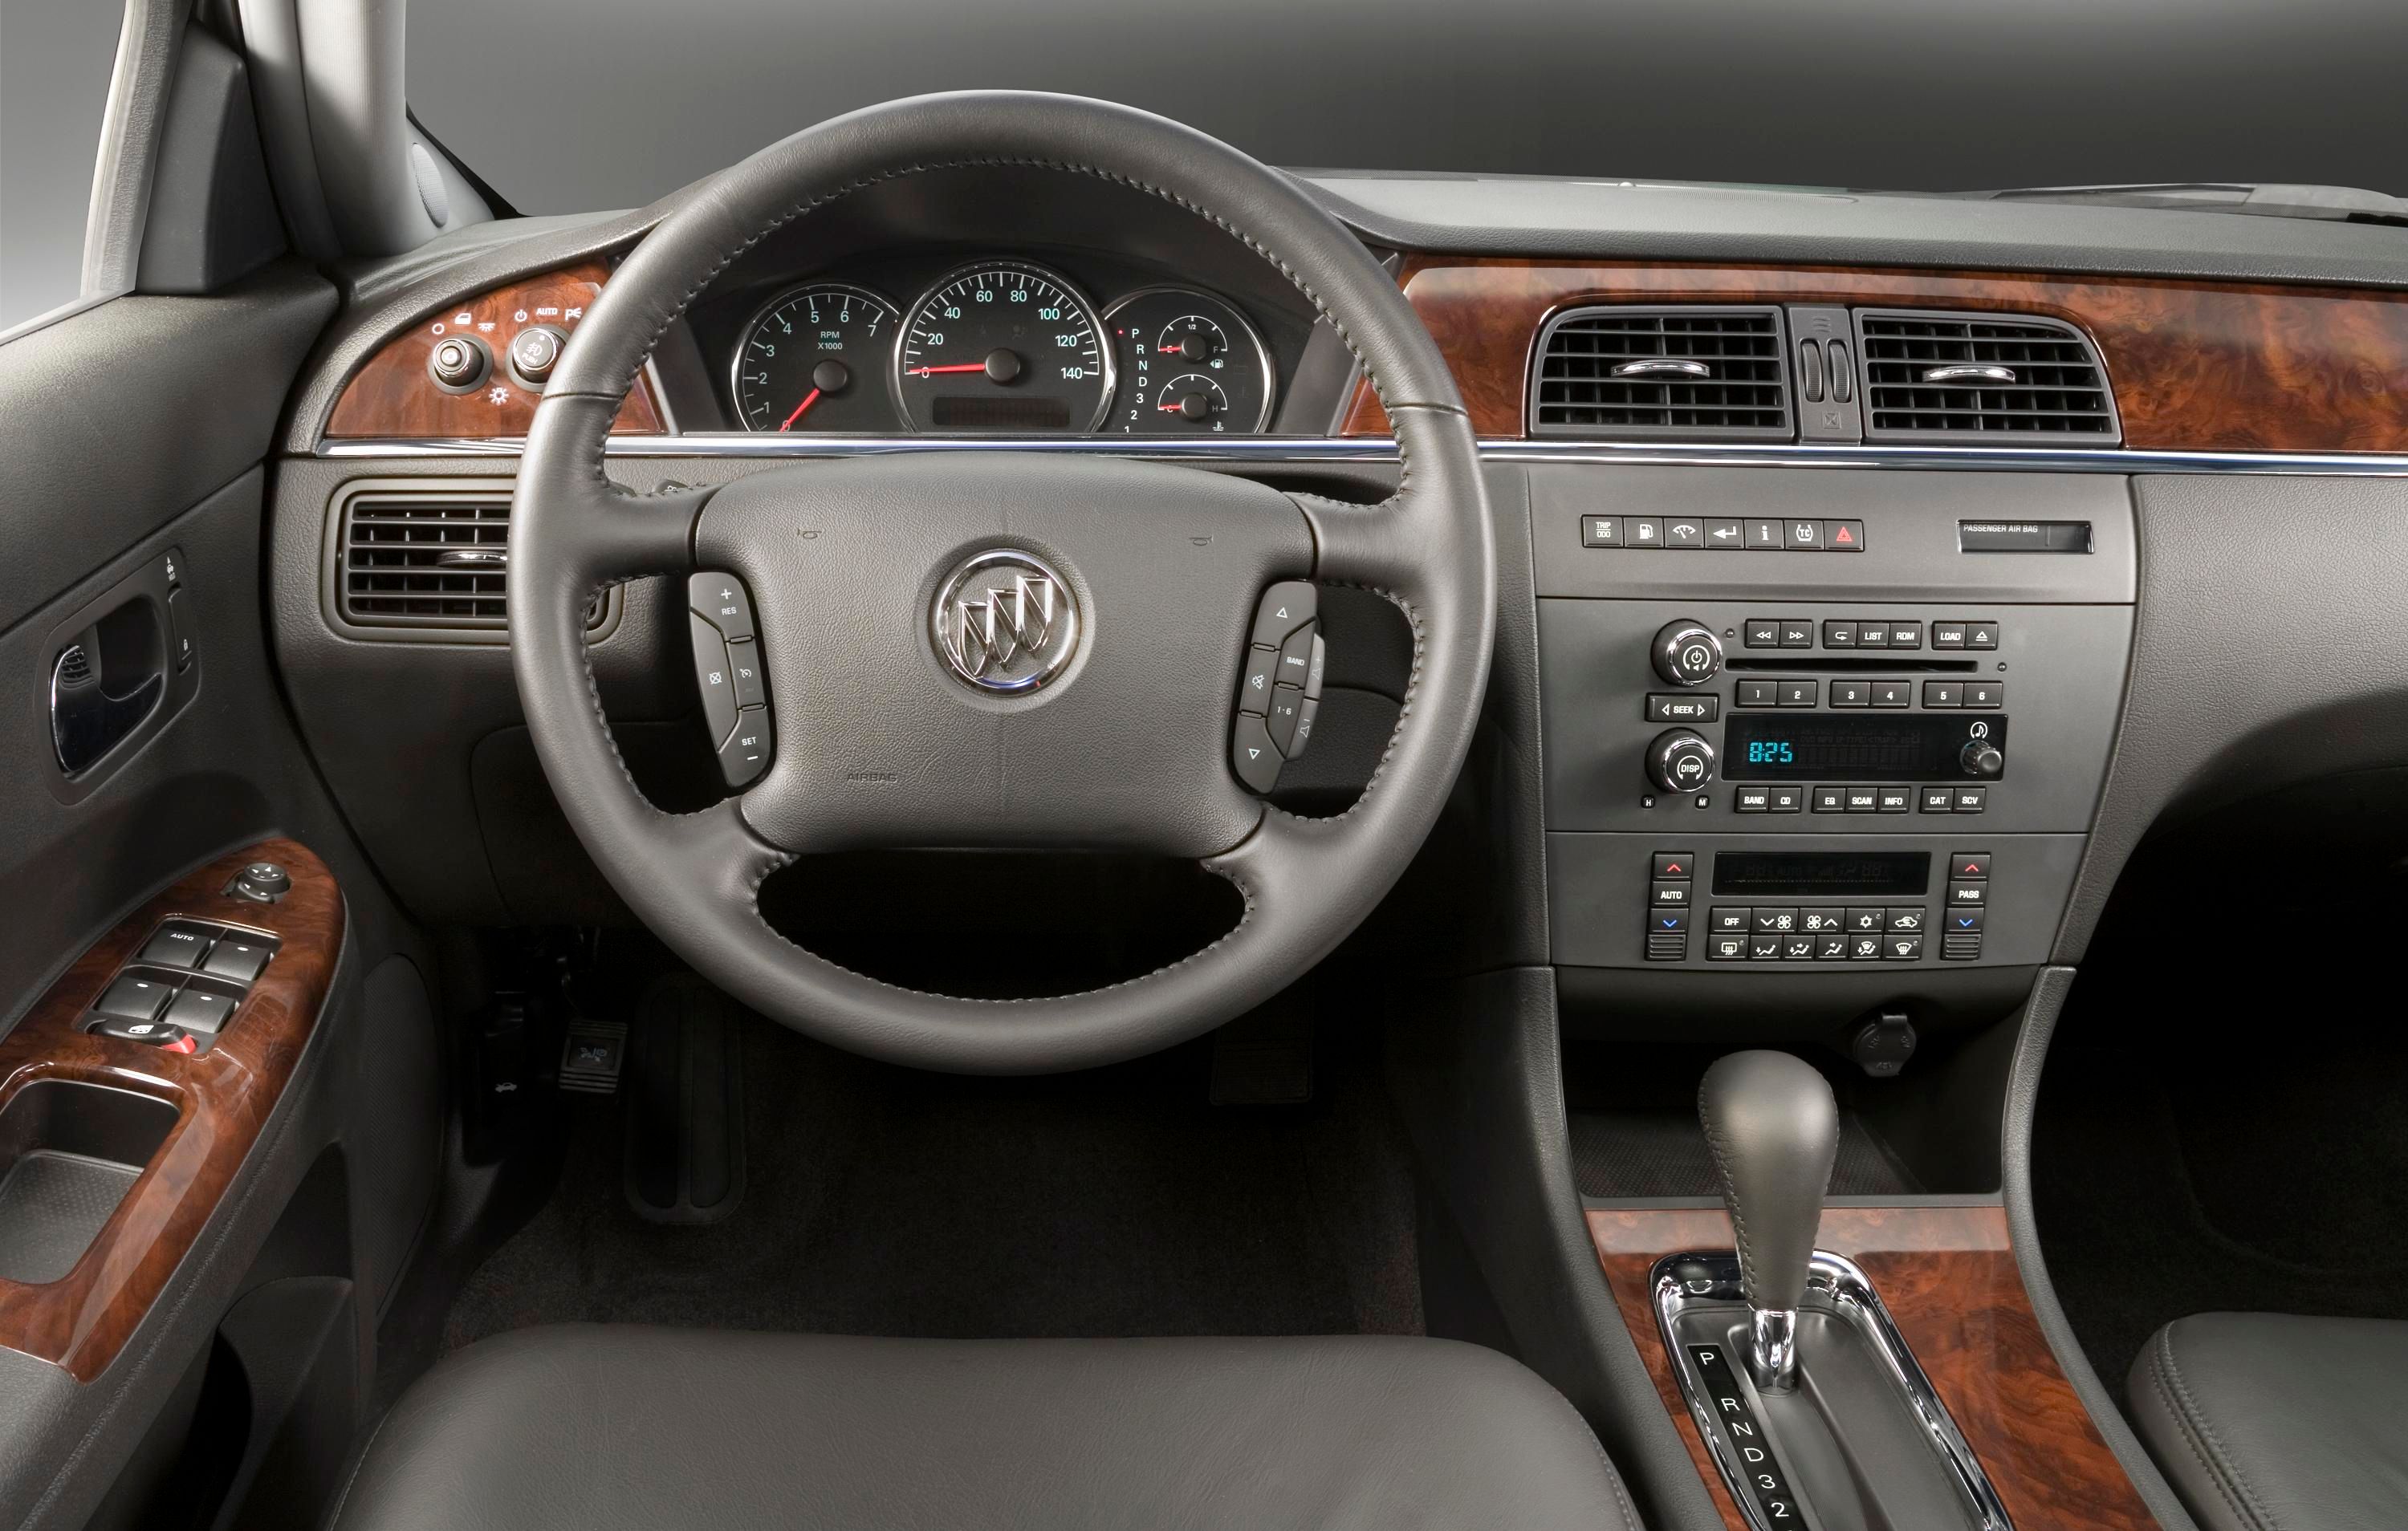 2008 Buick LaCrosse - cockpit